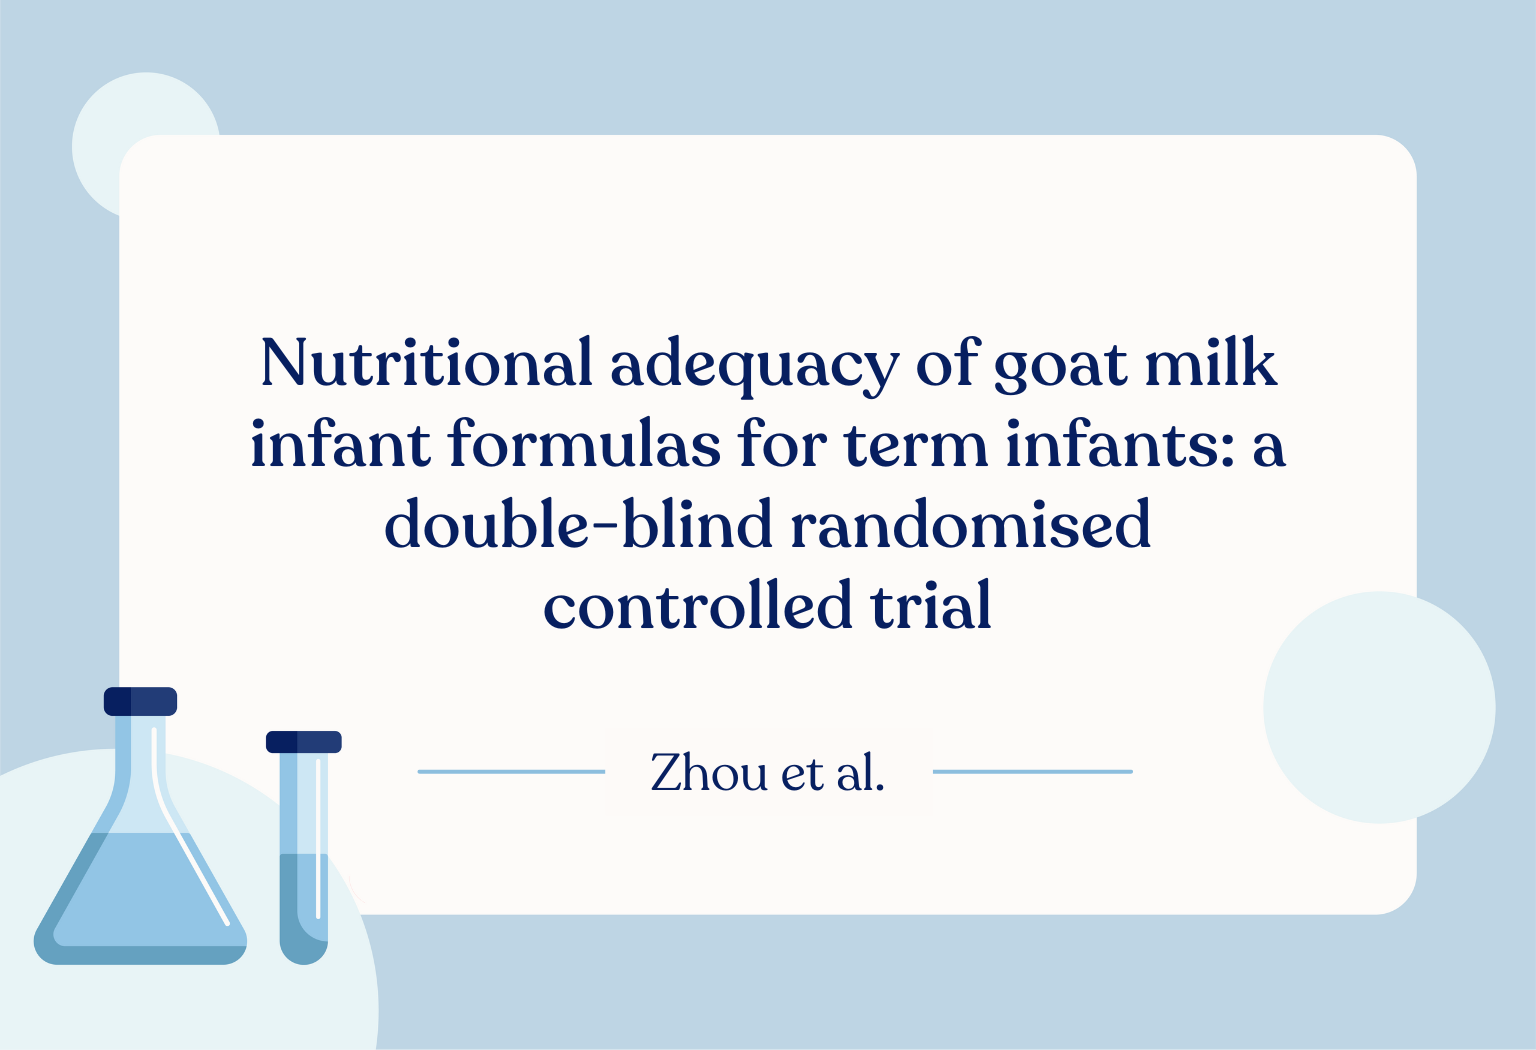 Goat milk infant formula